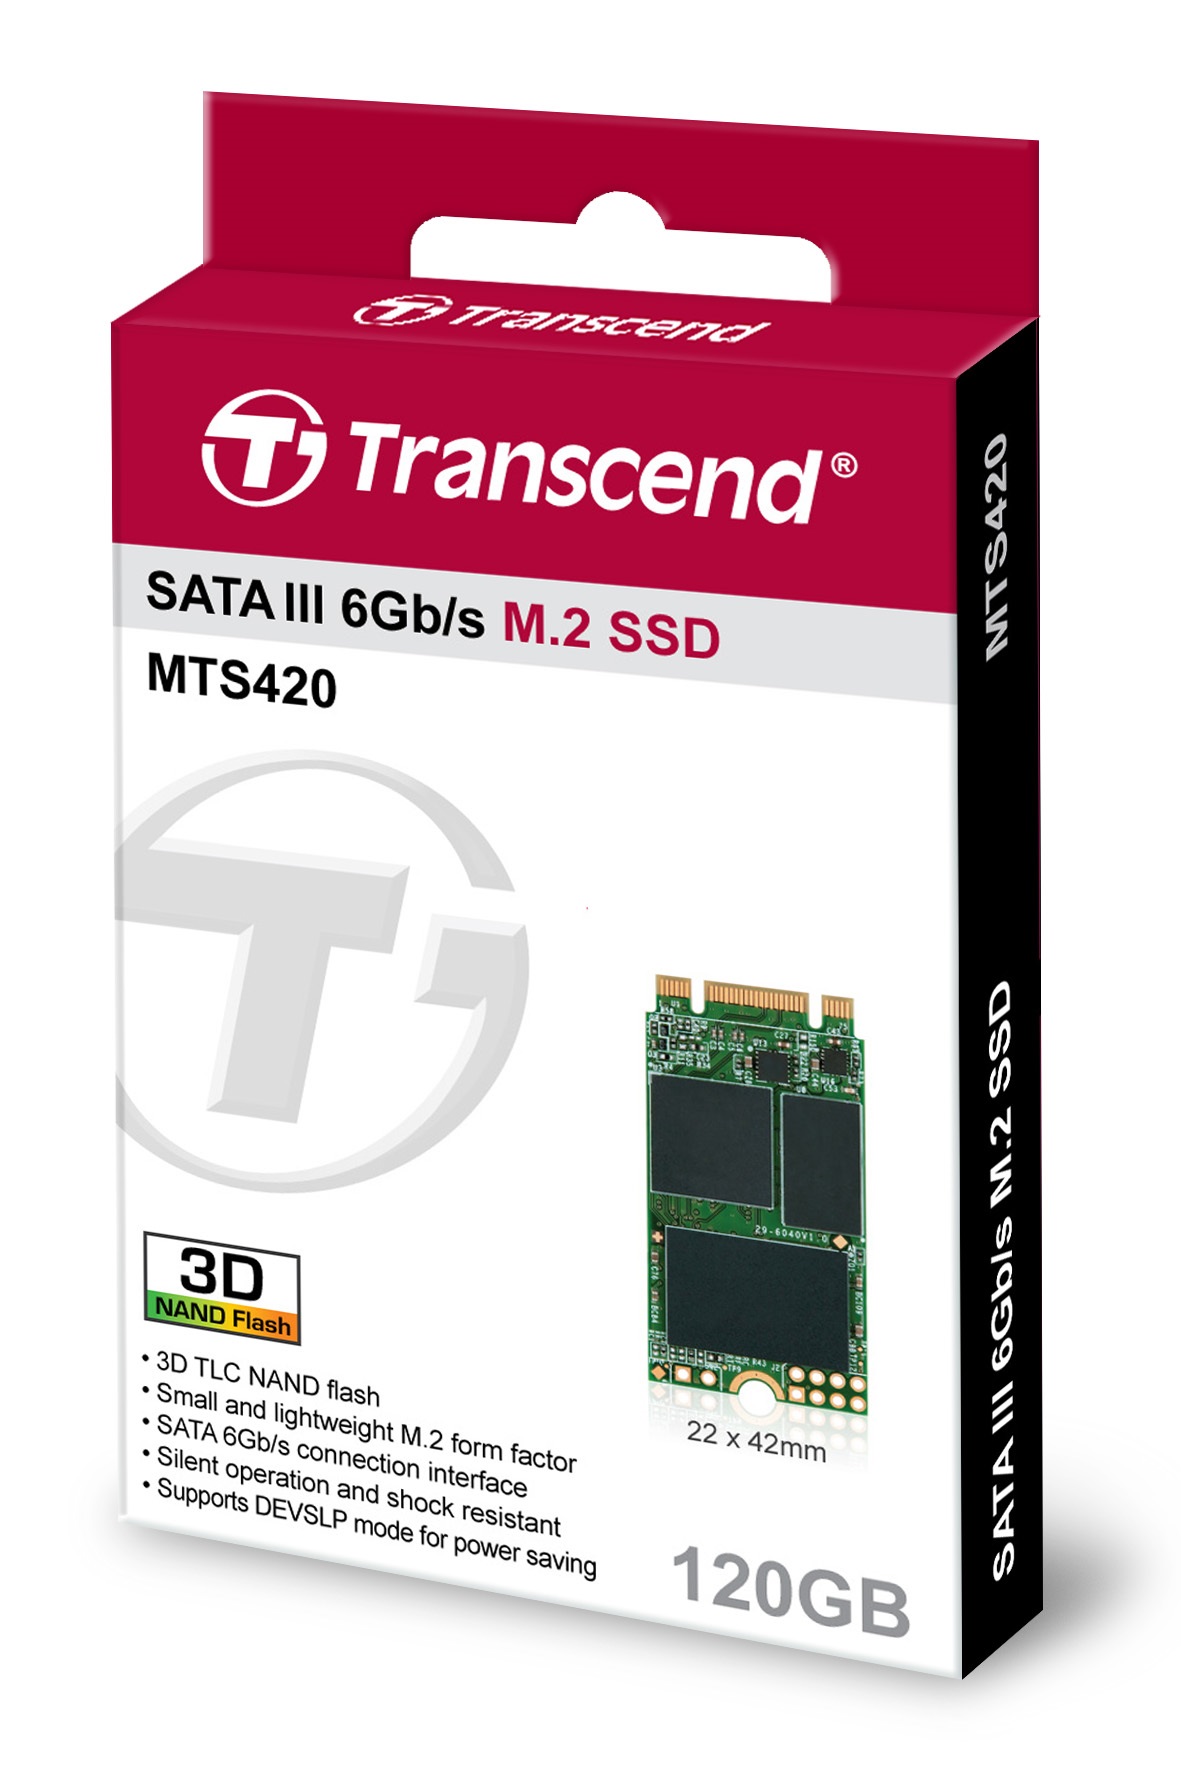 120GB Transcend M.2 SATA III 6Gb/s SSD 